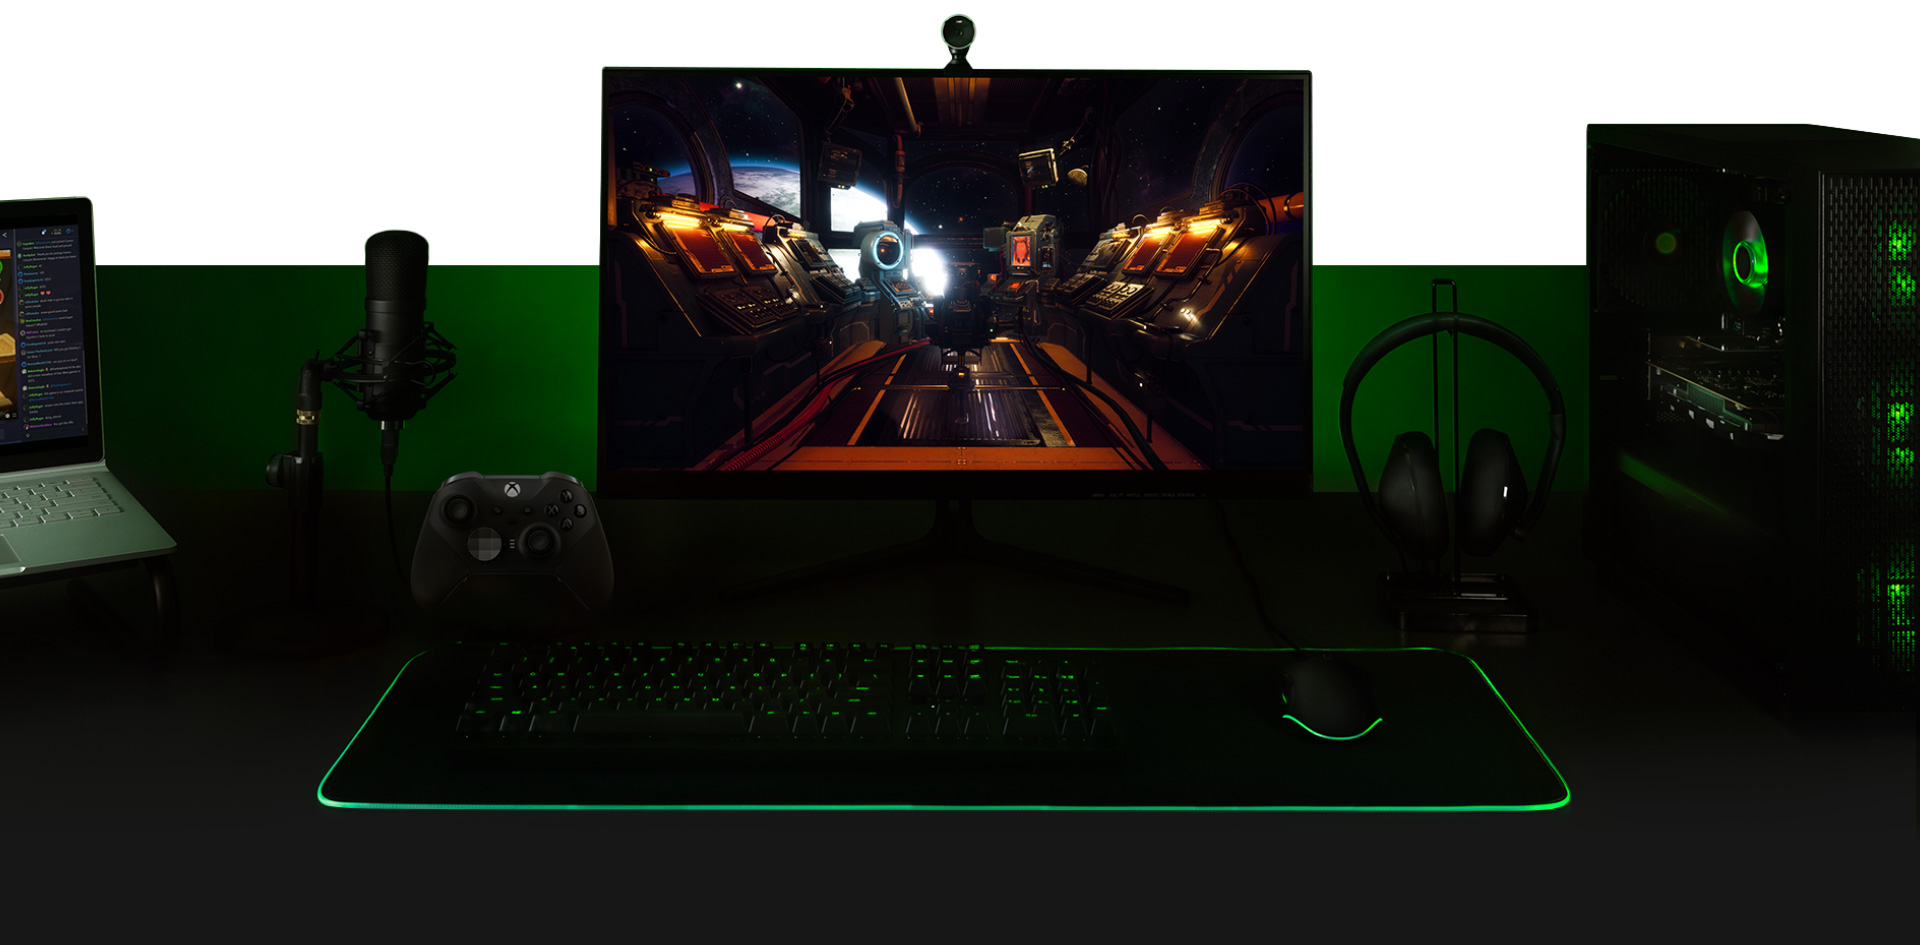 Рабочий стол с компьютером, сцена из The External Worlds на мониторе, клавиатура, геймпад Xbox One, микрофон и ноутбук, настроенные как единая система.